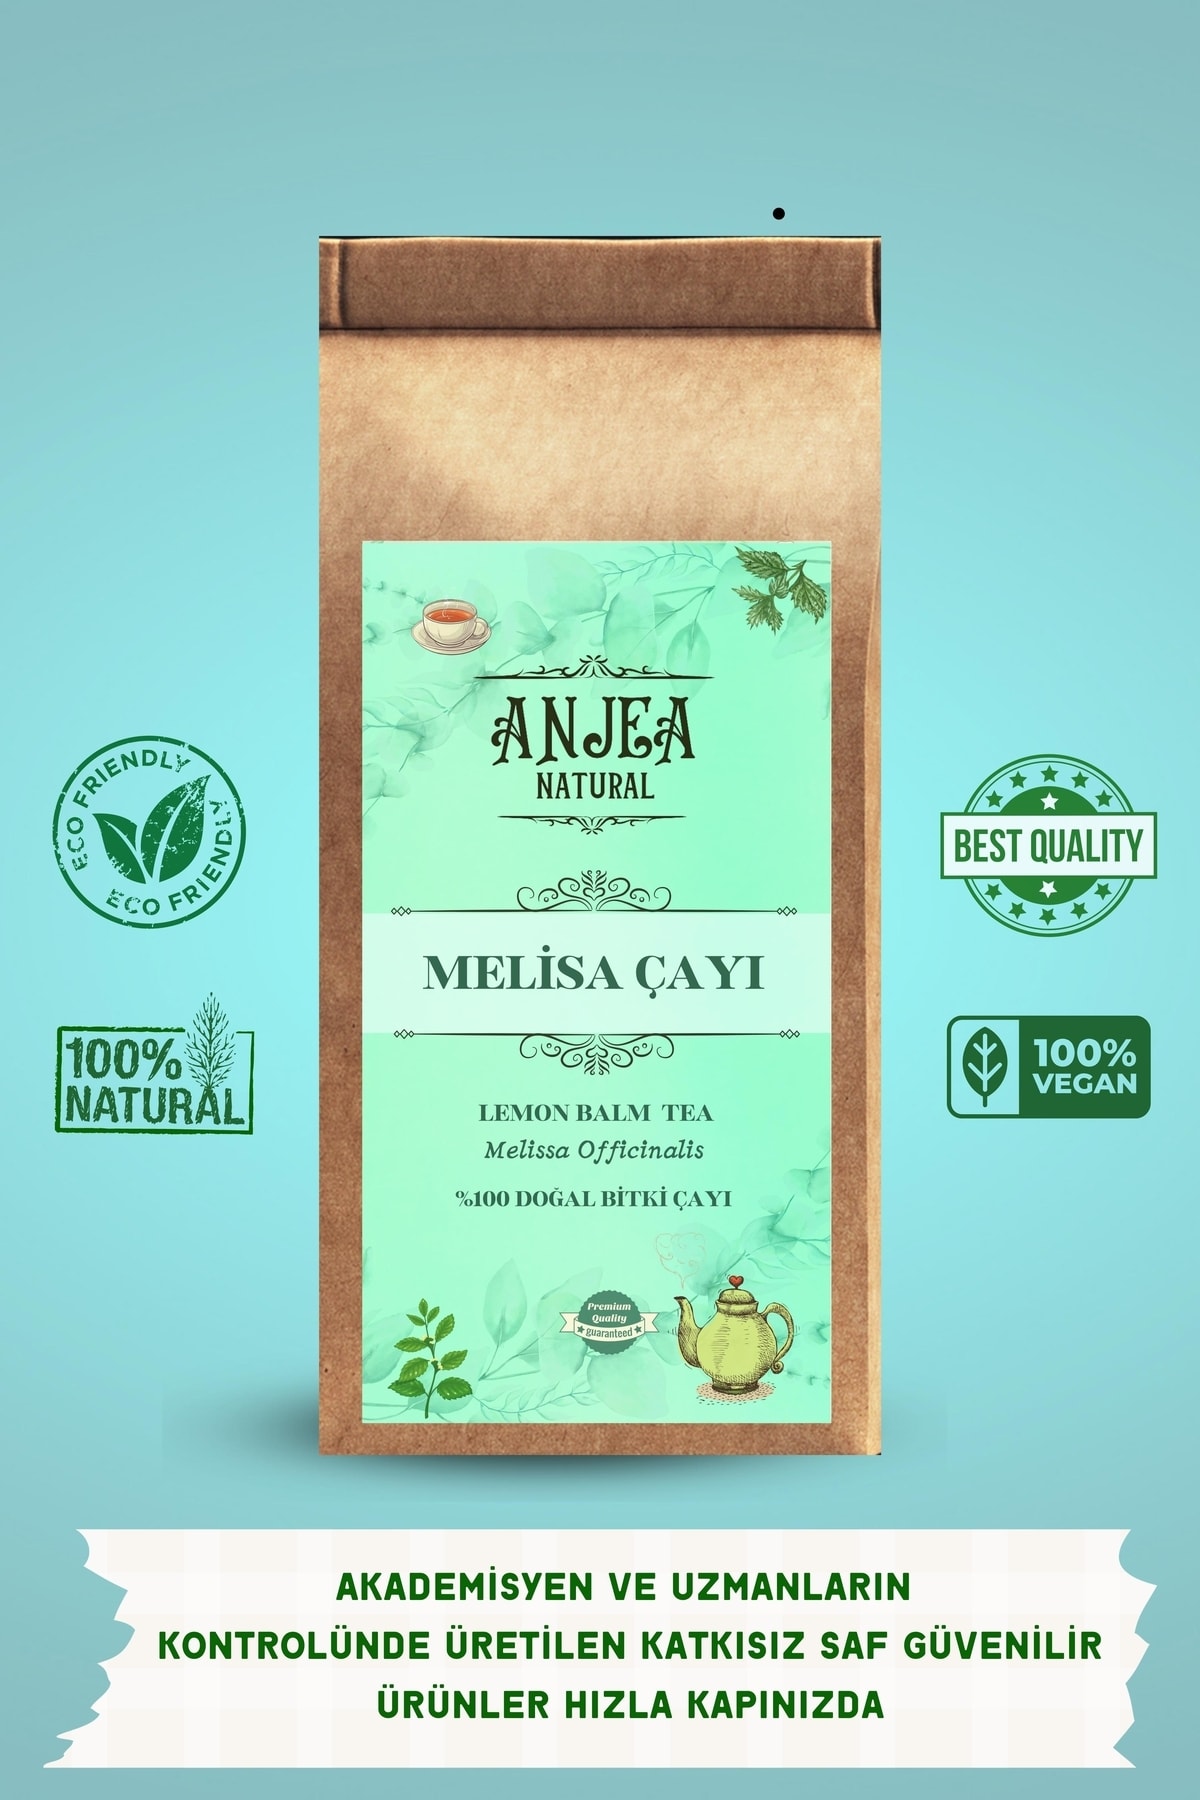 ANJEA Melisa Çayı - Doğal Bitki Çayı 40 gr / Lemon Balm Herbal Tea 100% Natural